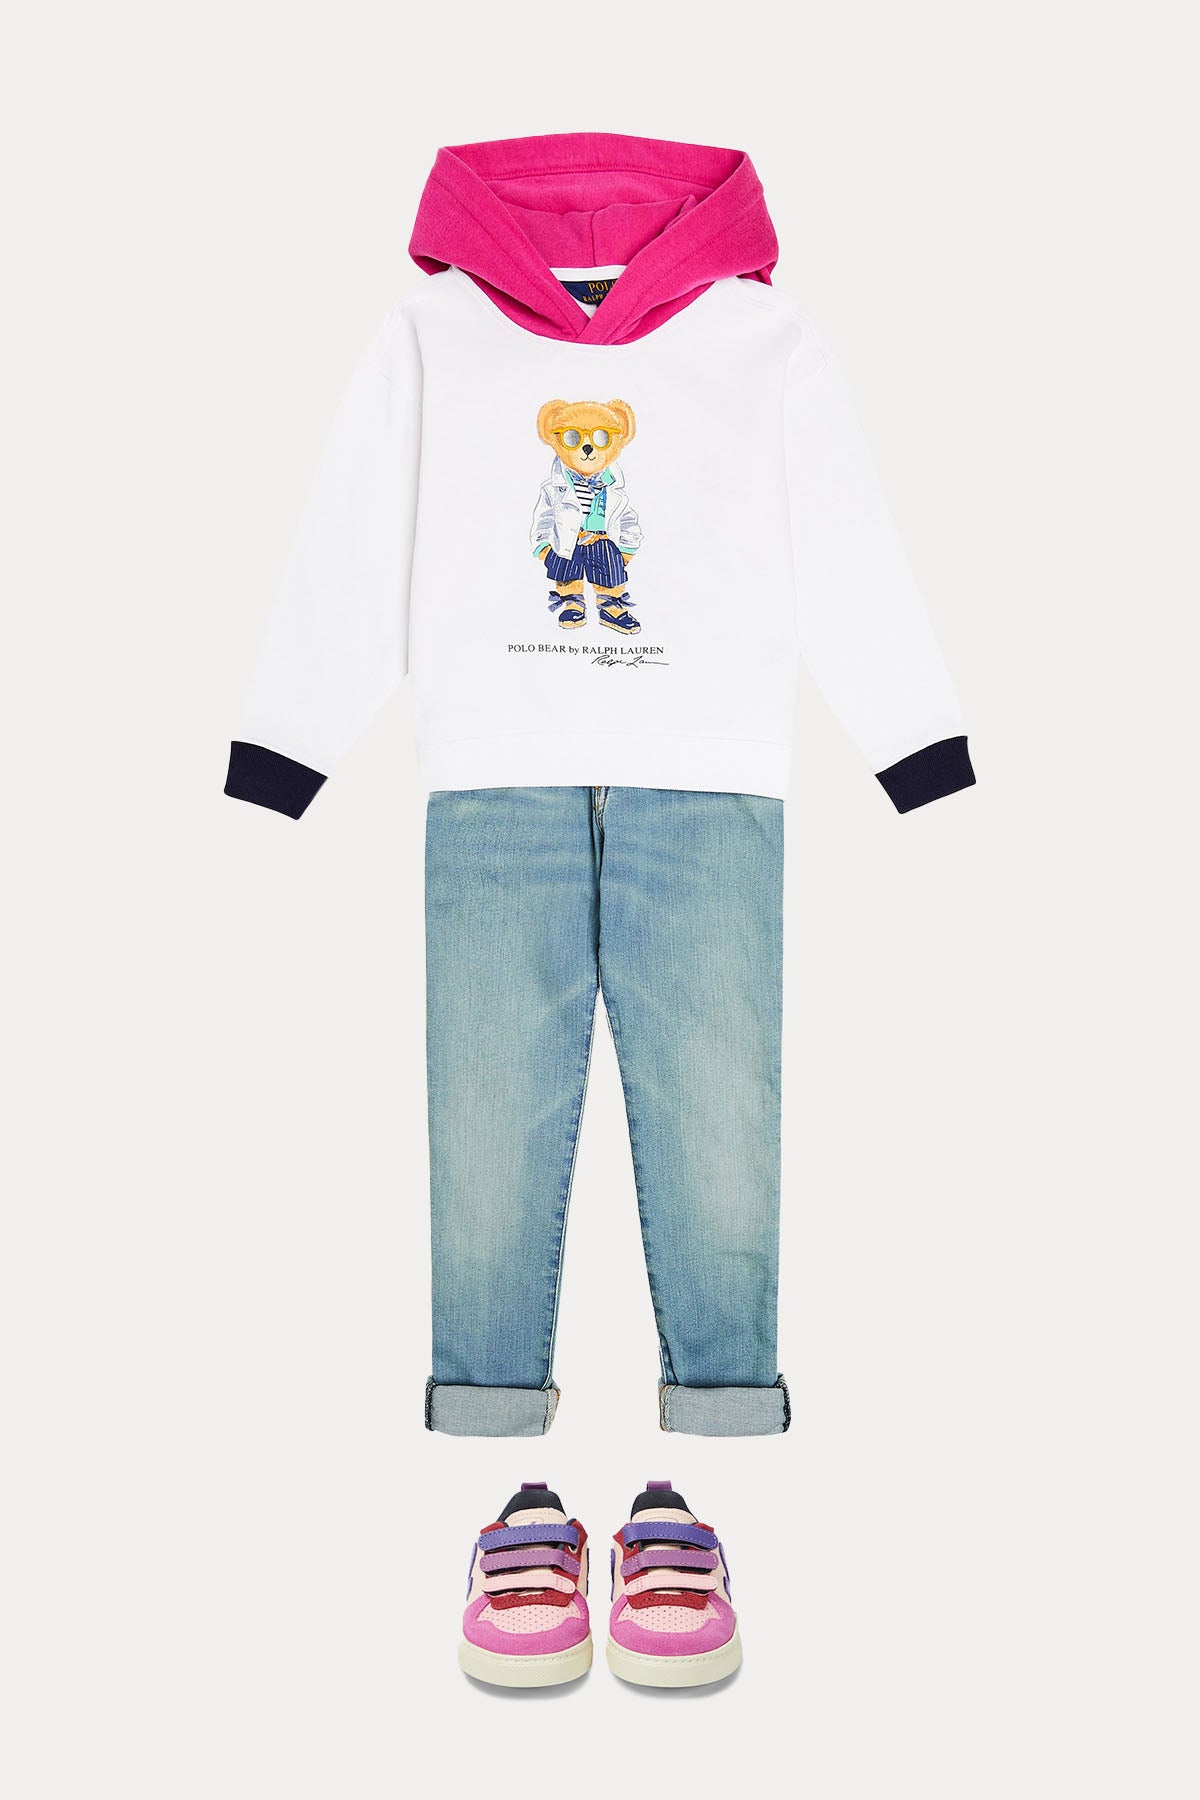 Polo Ralph Lauren Kids S Beden Kız Çocuk Kapüşonlu Polo Bear Sweatshirt